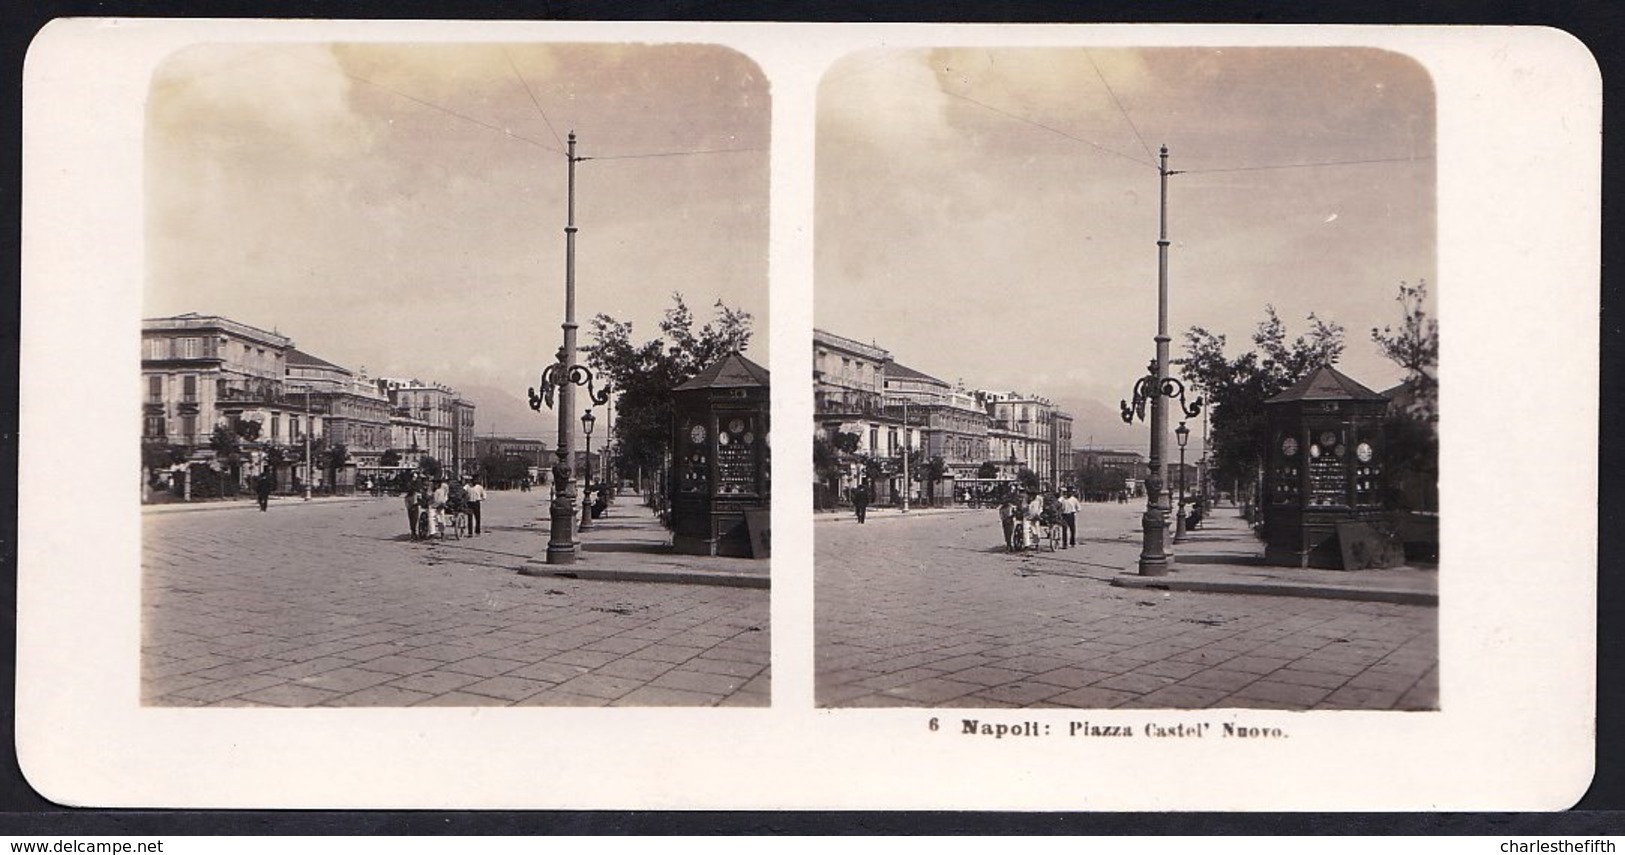 1906 VECCHIA FOTO STEREO ITALIA - CAMPANIA - ** NAPOLI ; PIAZZA CASTEL NUOVO ** RARE - Old (before 1900)